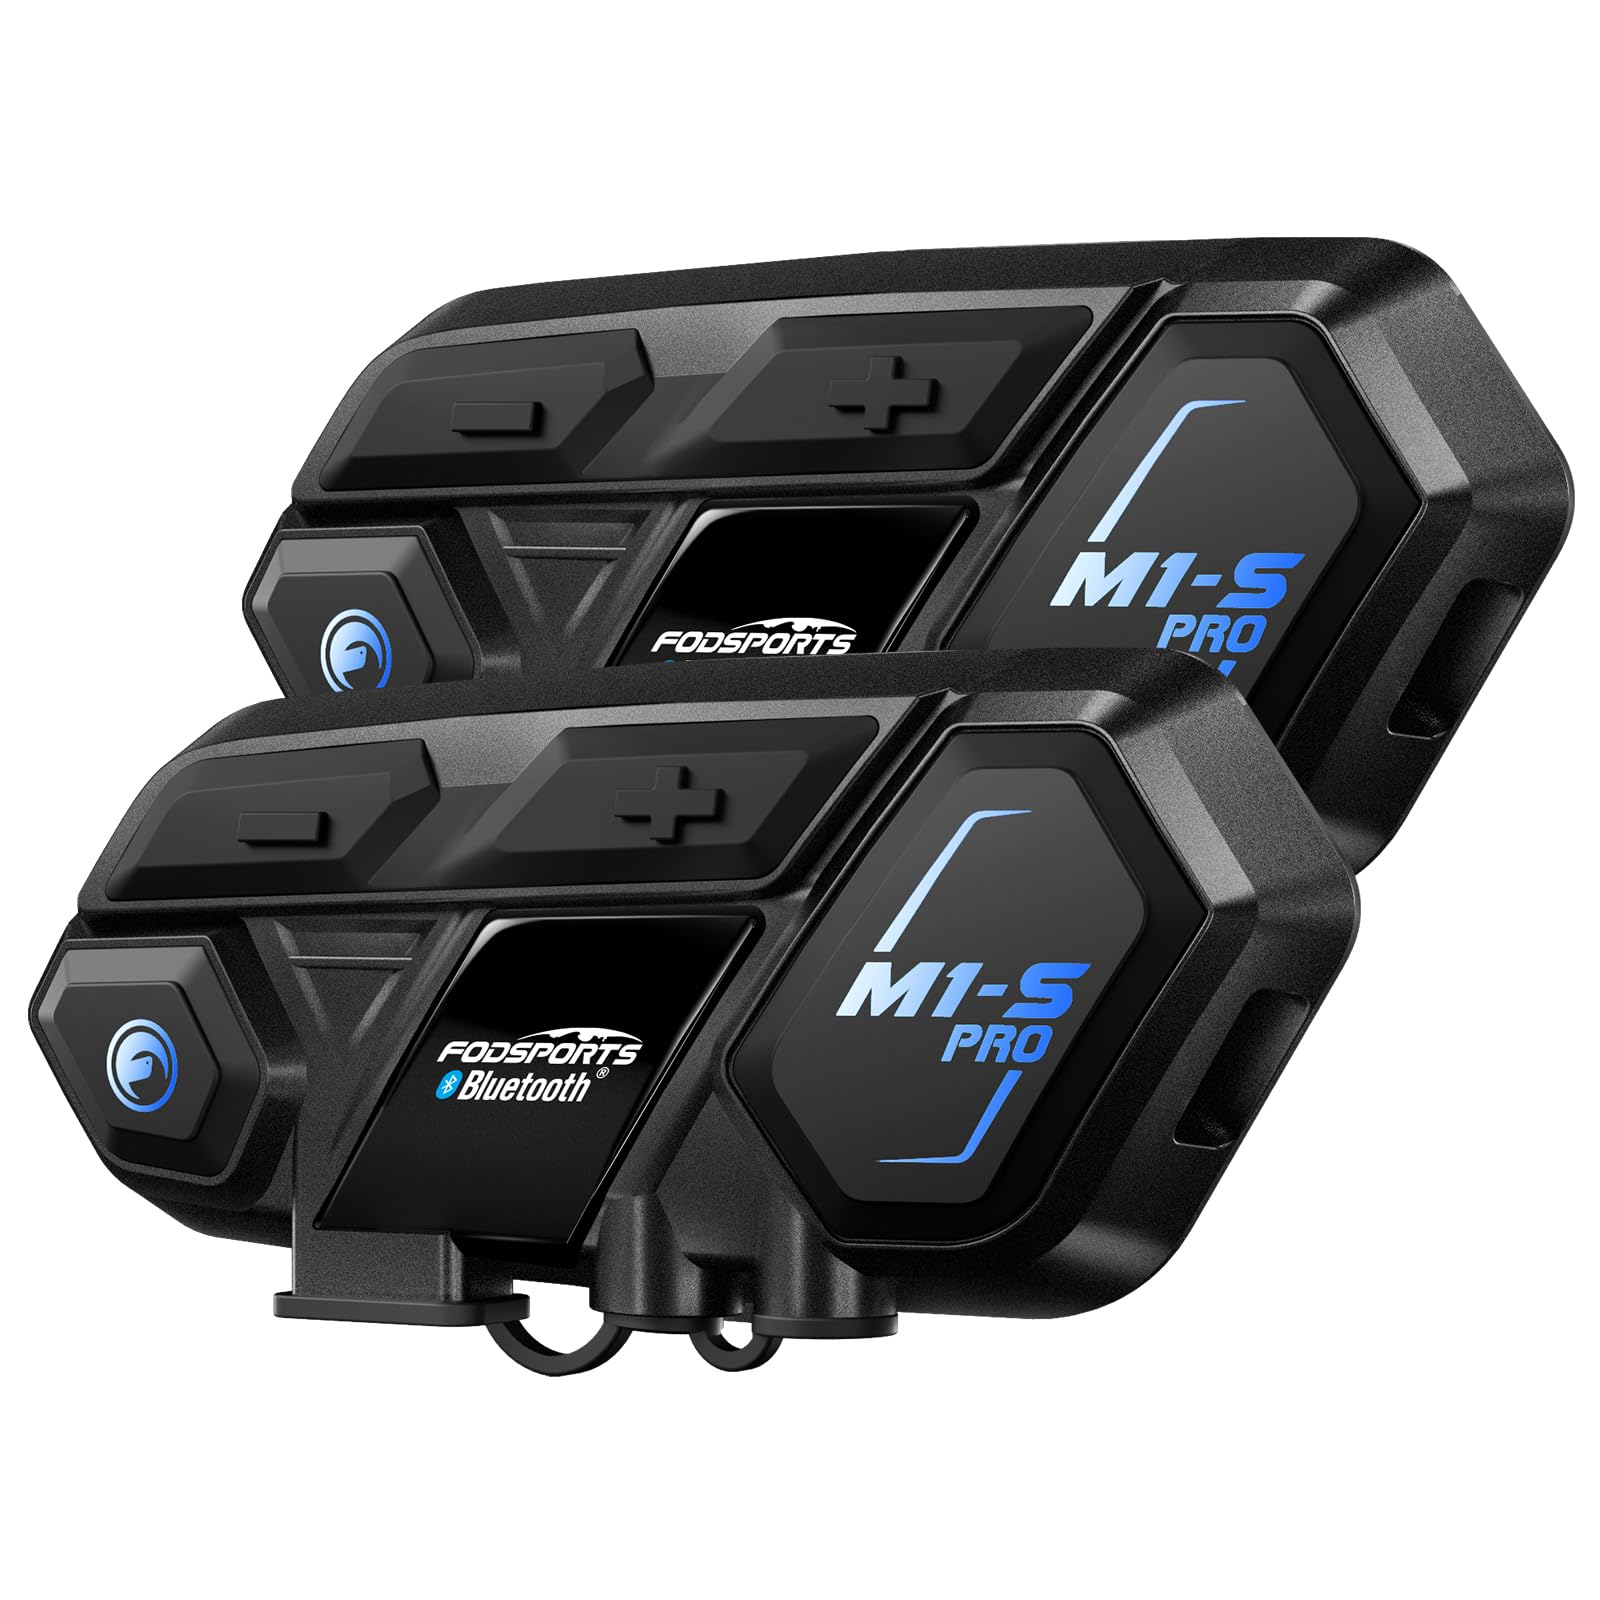 Fodsports M1-S Pro Motorrad Bluetooth Headset, Helm Intercom mit Geräuschunterdrückung, 900mAh, Motorradhelm Gegensprechanlage Kommunikationssystem mit 8 Teilnehmern, GPS, FM Radio, Wasserdichtes von Fodsports